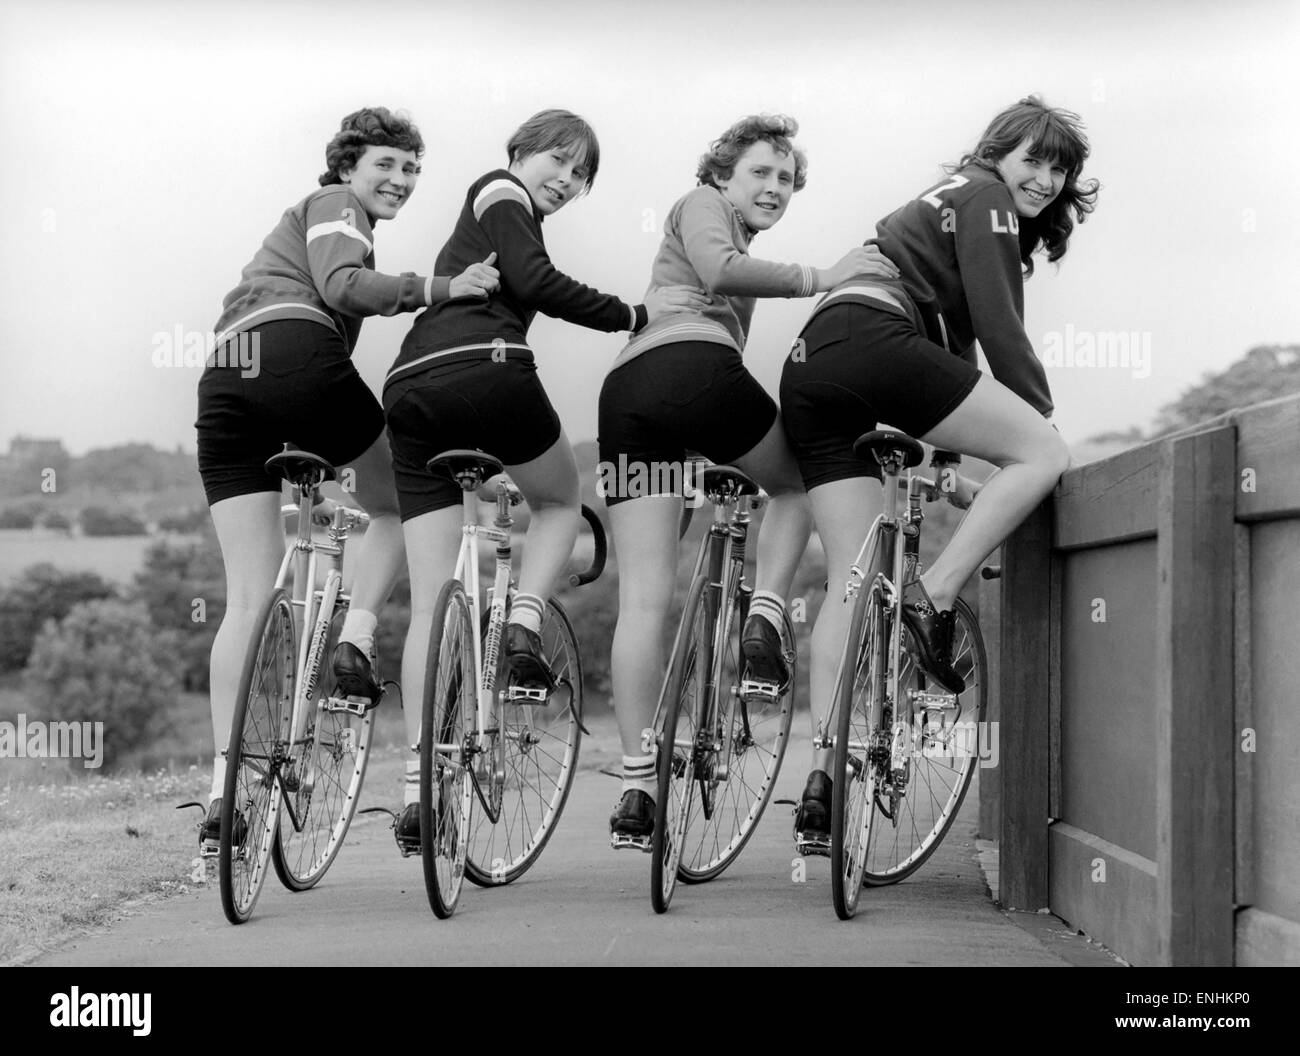 Chicas en bicicleta Imágenes de stock en blanco y negro - Alamy